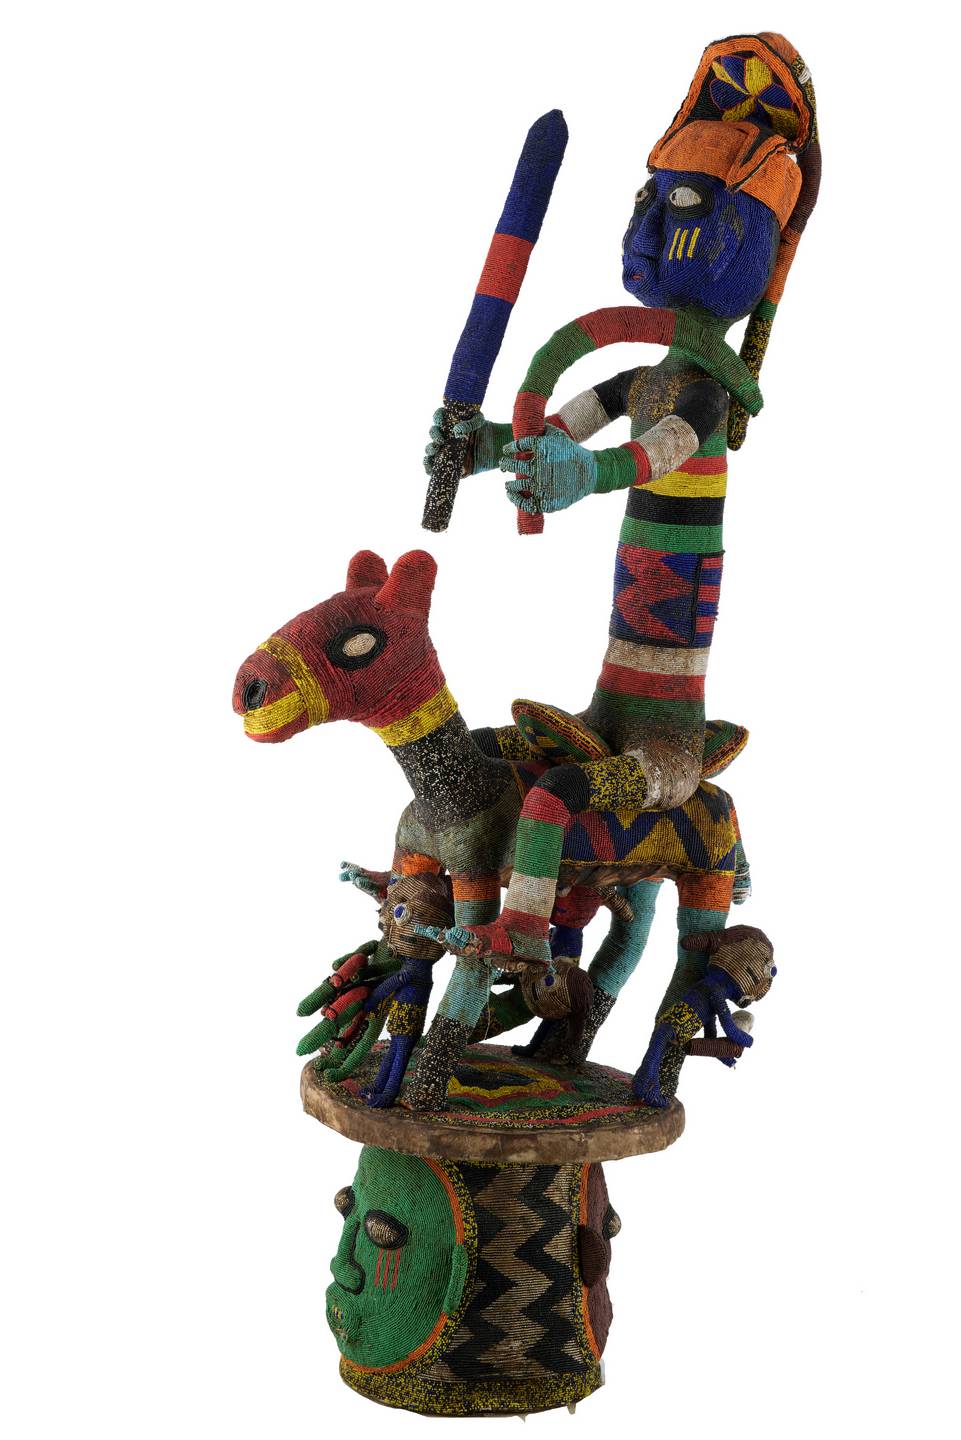 Youruba(masque n°1980), d`afrique : Nigéria et Bénin, statuette Youruba(masque n°1980), masque ancien africain Youruba(masque n°1980), art du Nigéria et Bénin - Art Africain, collection privées Belgique. Statue africaine de la tribu des Youruba(masque n°1980), provenant du Nigéria et Bénin, n°1980 Masque EPA ,connu sous le nom d